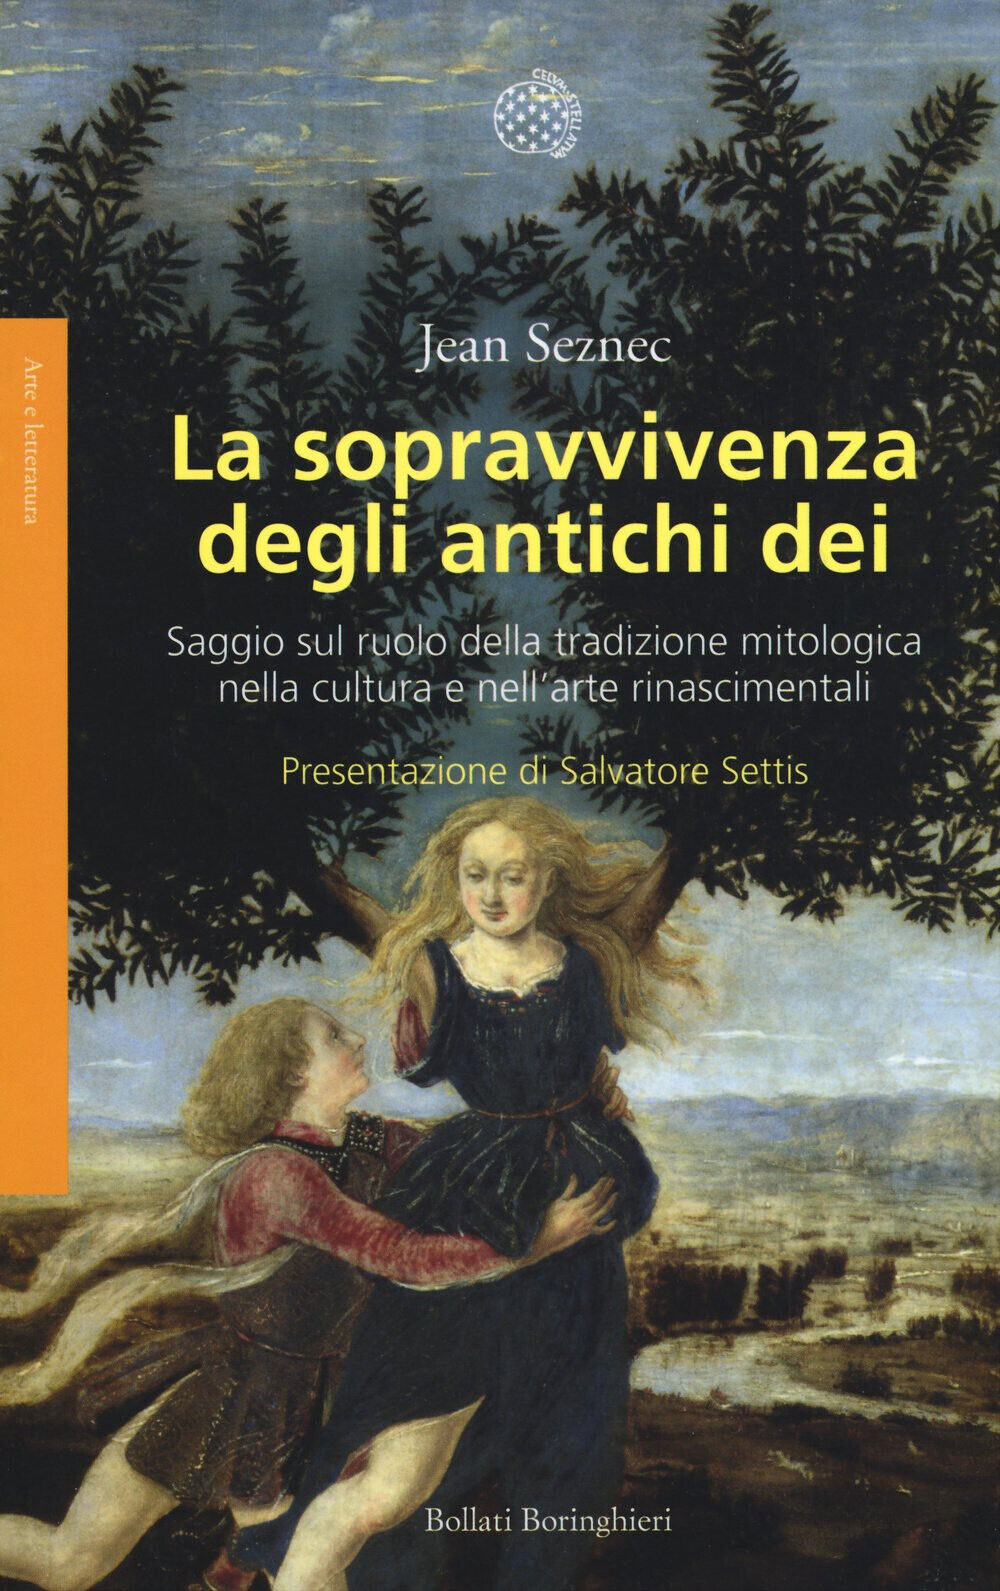 La sopravvivenza degli antichi dei - Jean Seznec - Bollati, 2015 libro usato